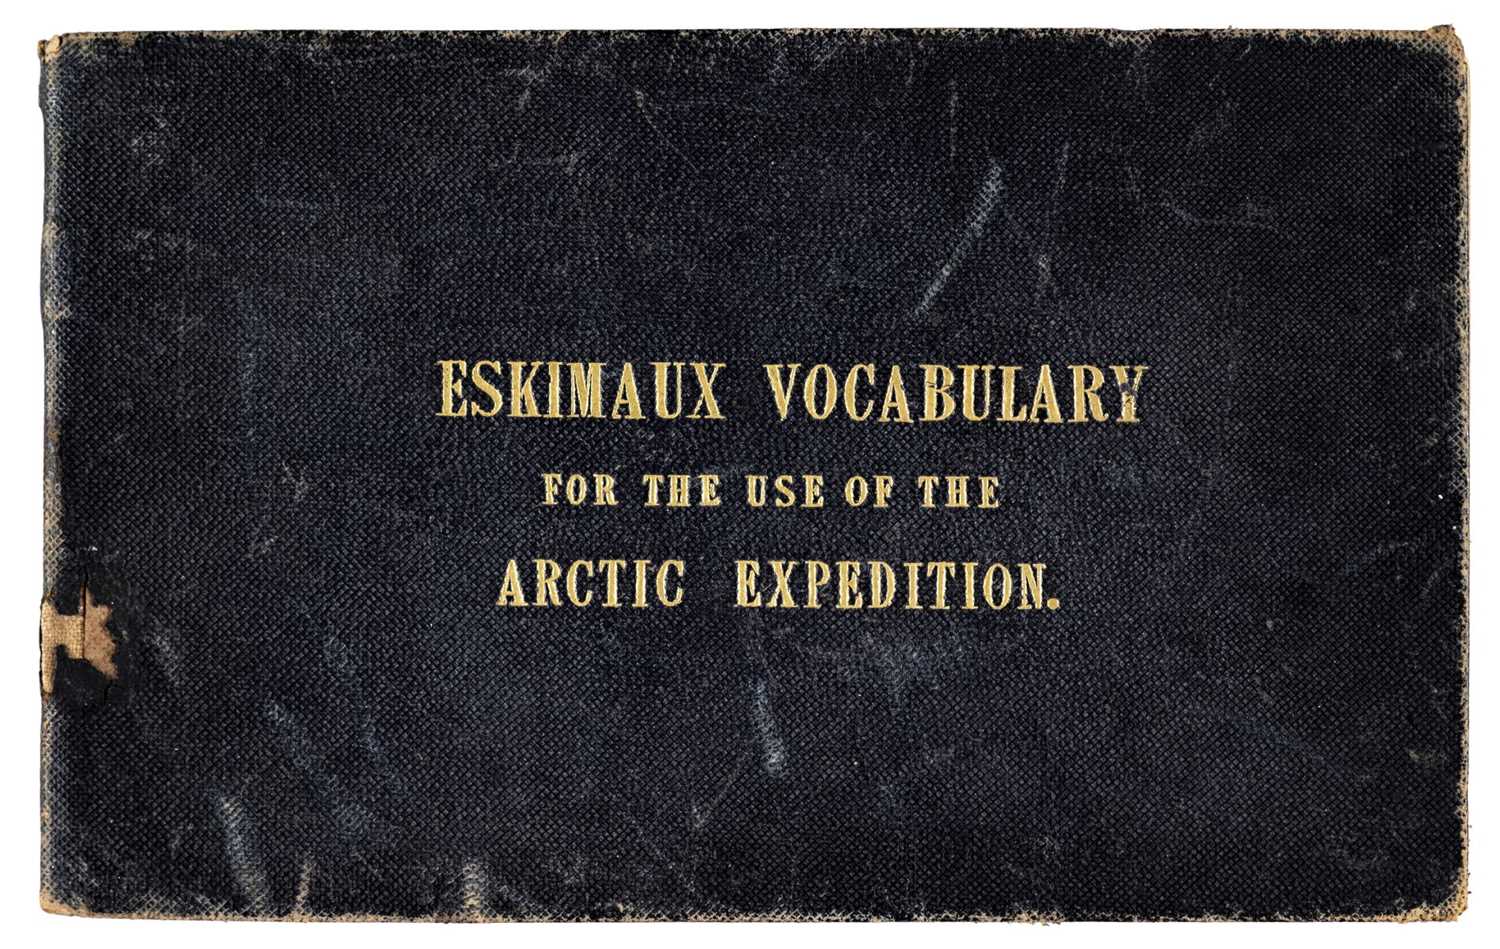 178 - Washington (John). Eskimaux and English Vocabulary, 1850